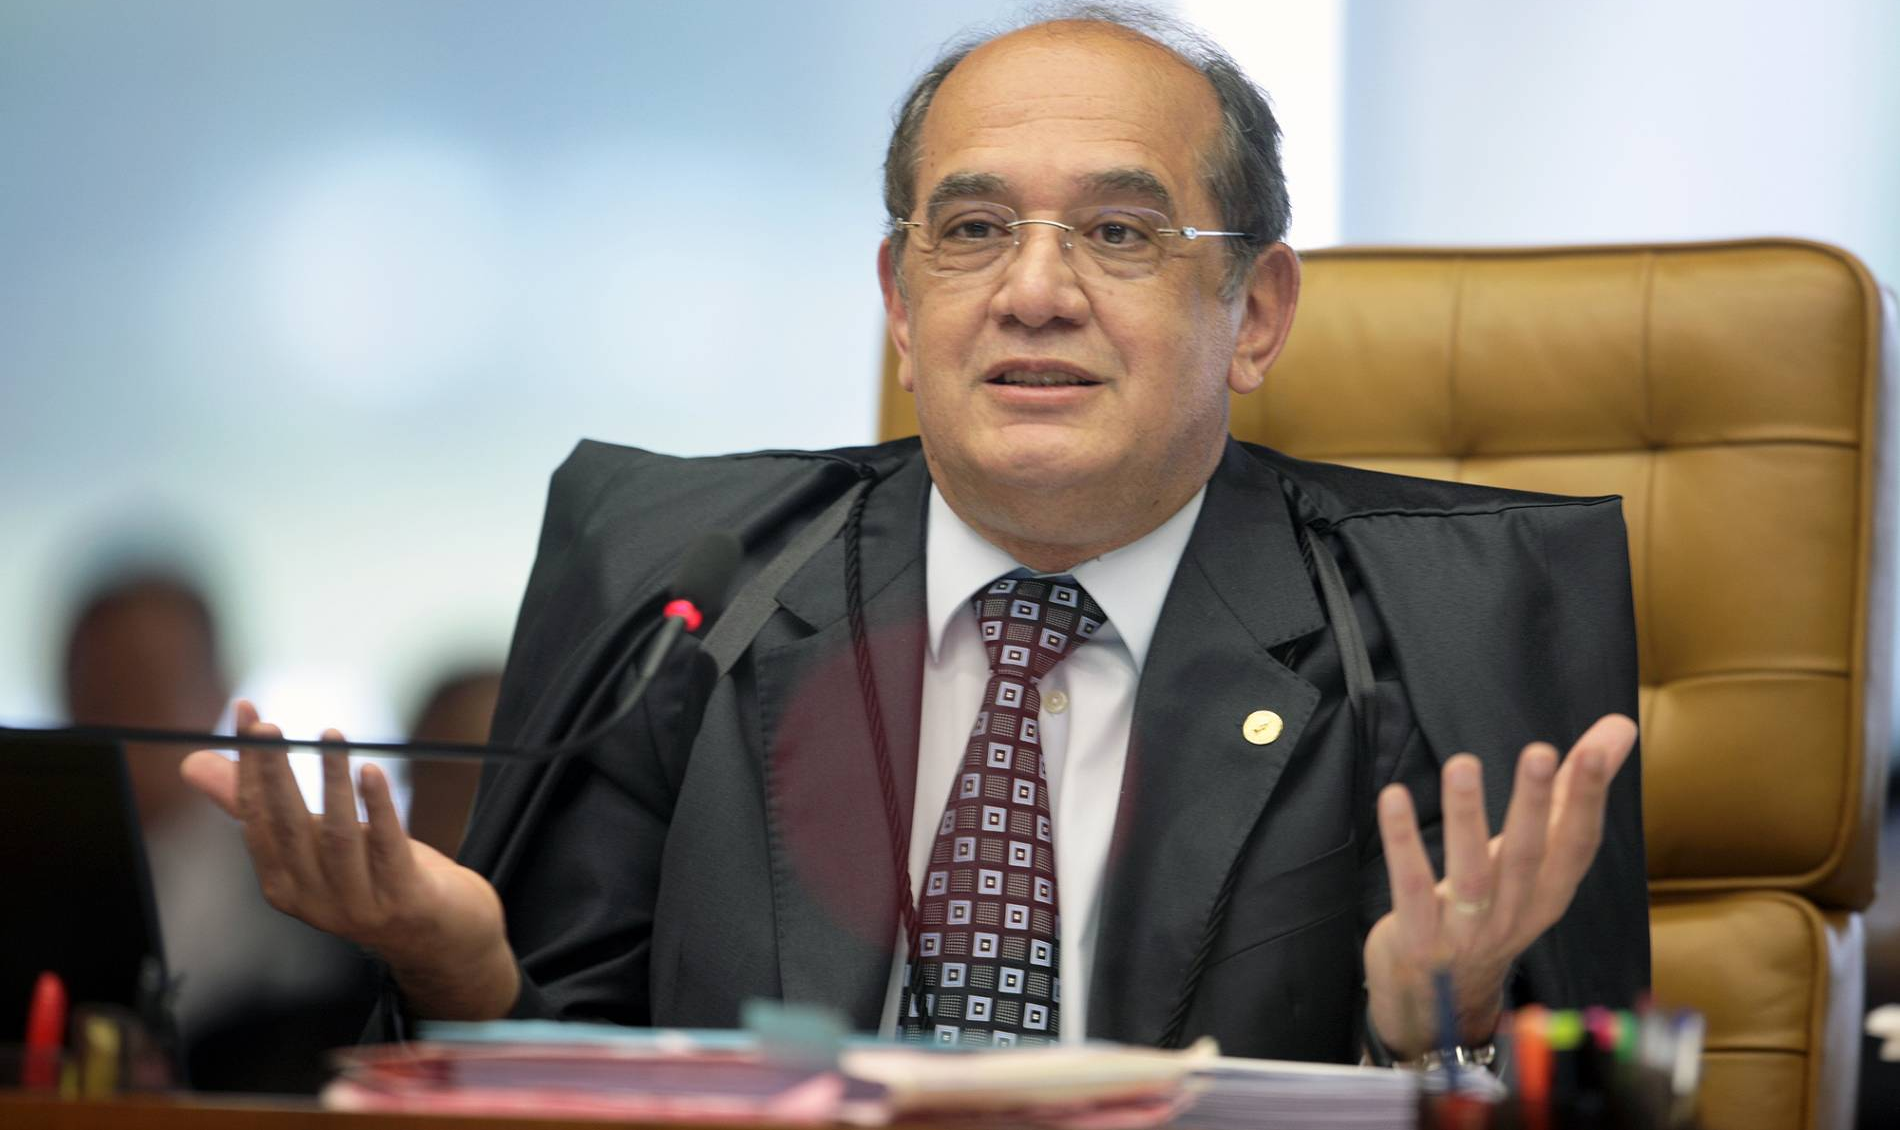 "Fico imaginando quantas pessoas tiveram de delatar a partir da indução dessa gente", disse o ministro do STF em entrevista à Rádio Gaúcha